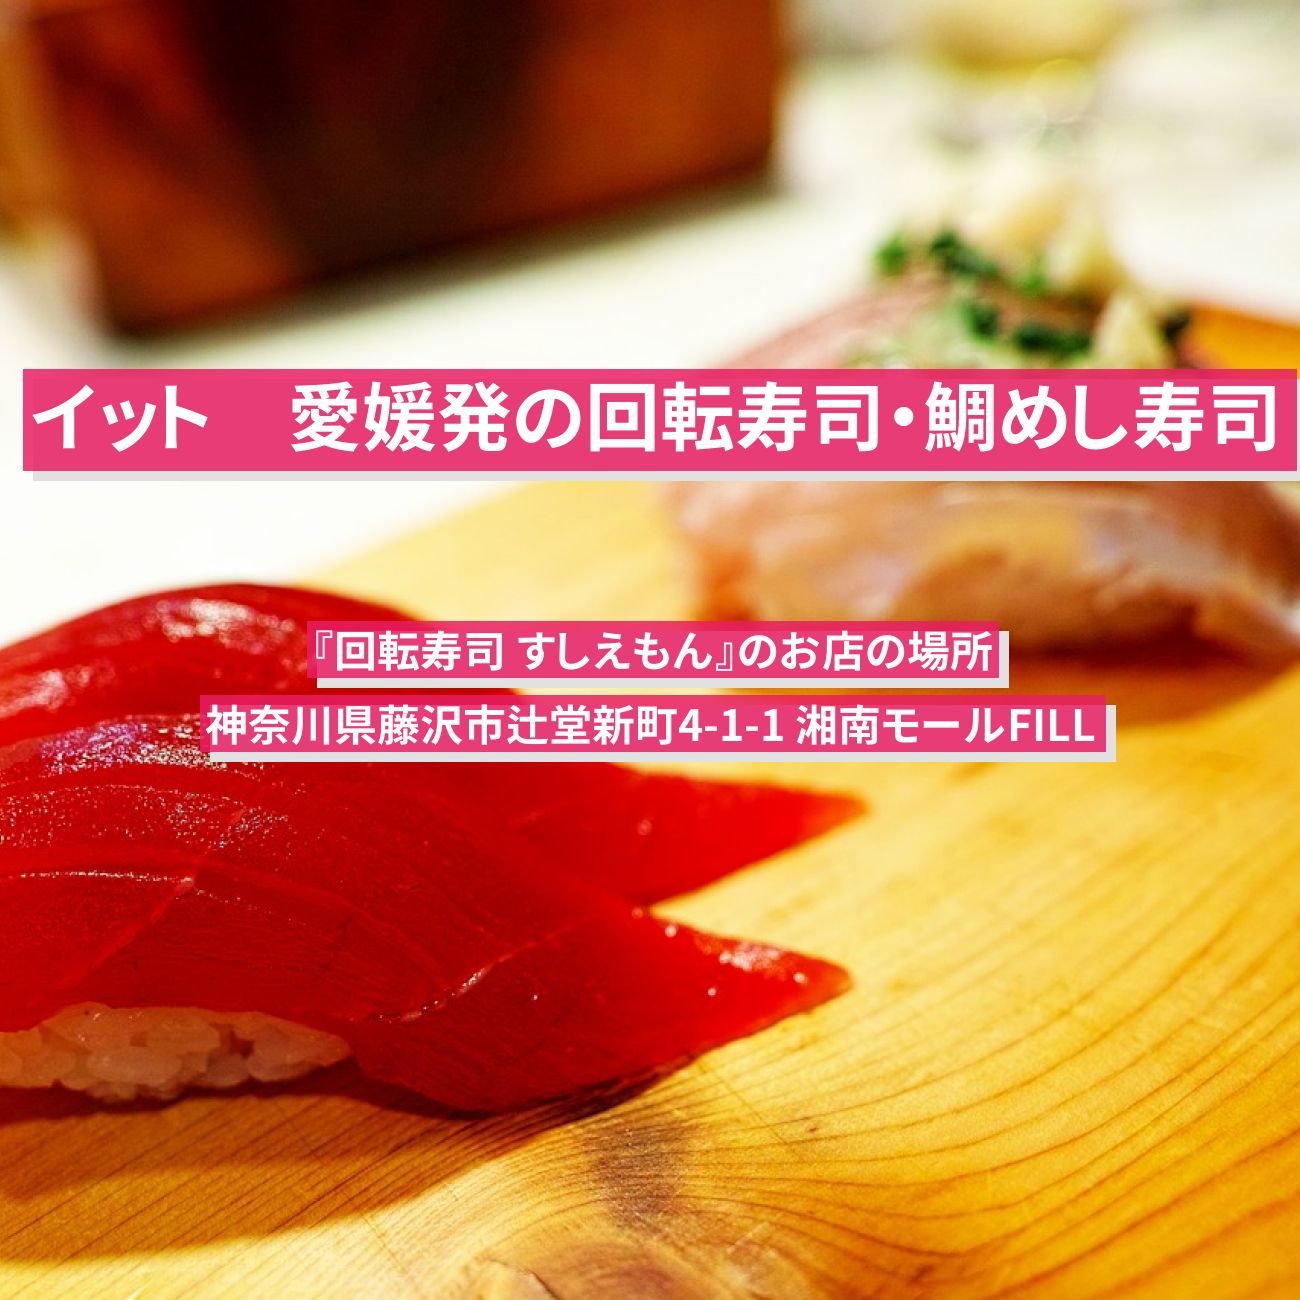 【イット】愛媛発の回転寿司・鯛めし寿司『回転寿司 すしえもん』藤沢市のお店の場所